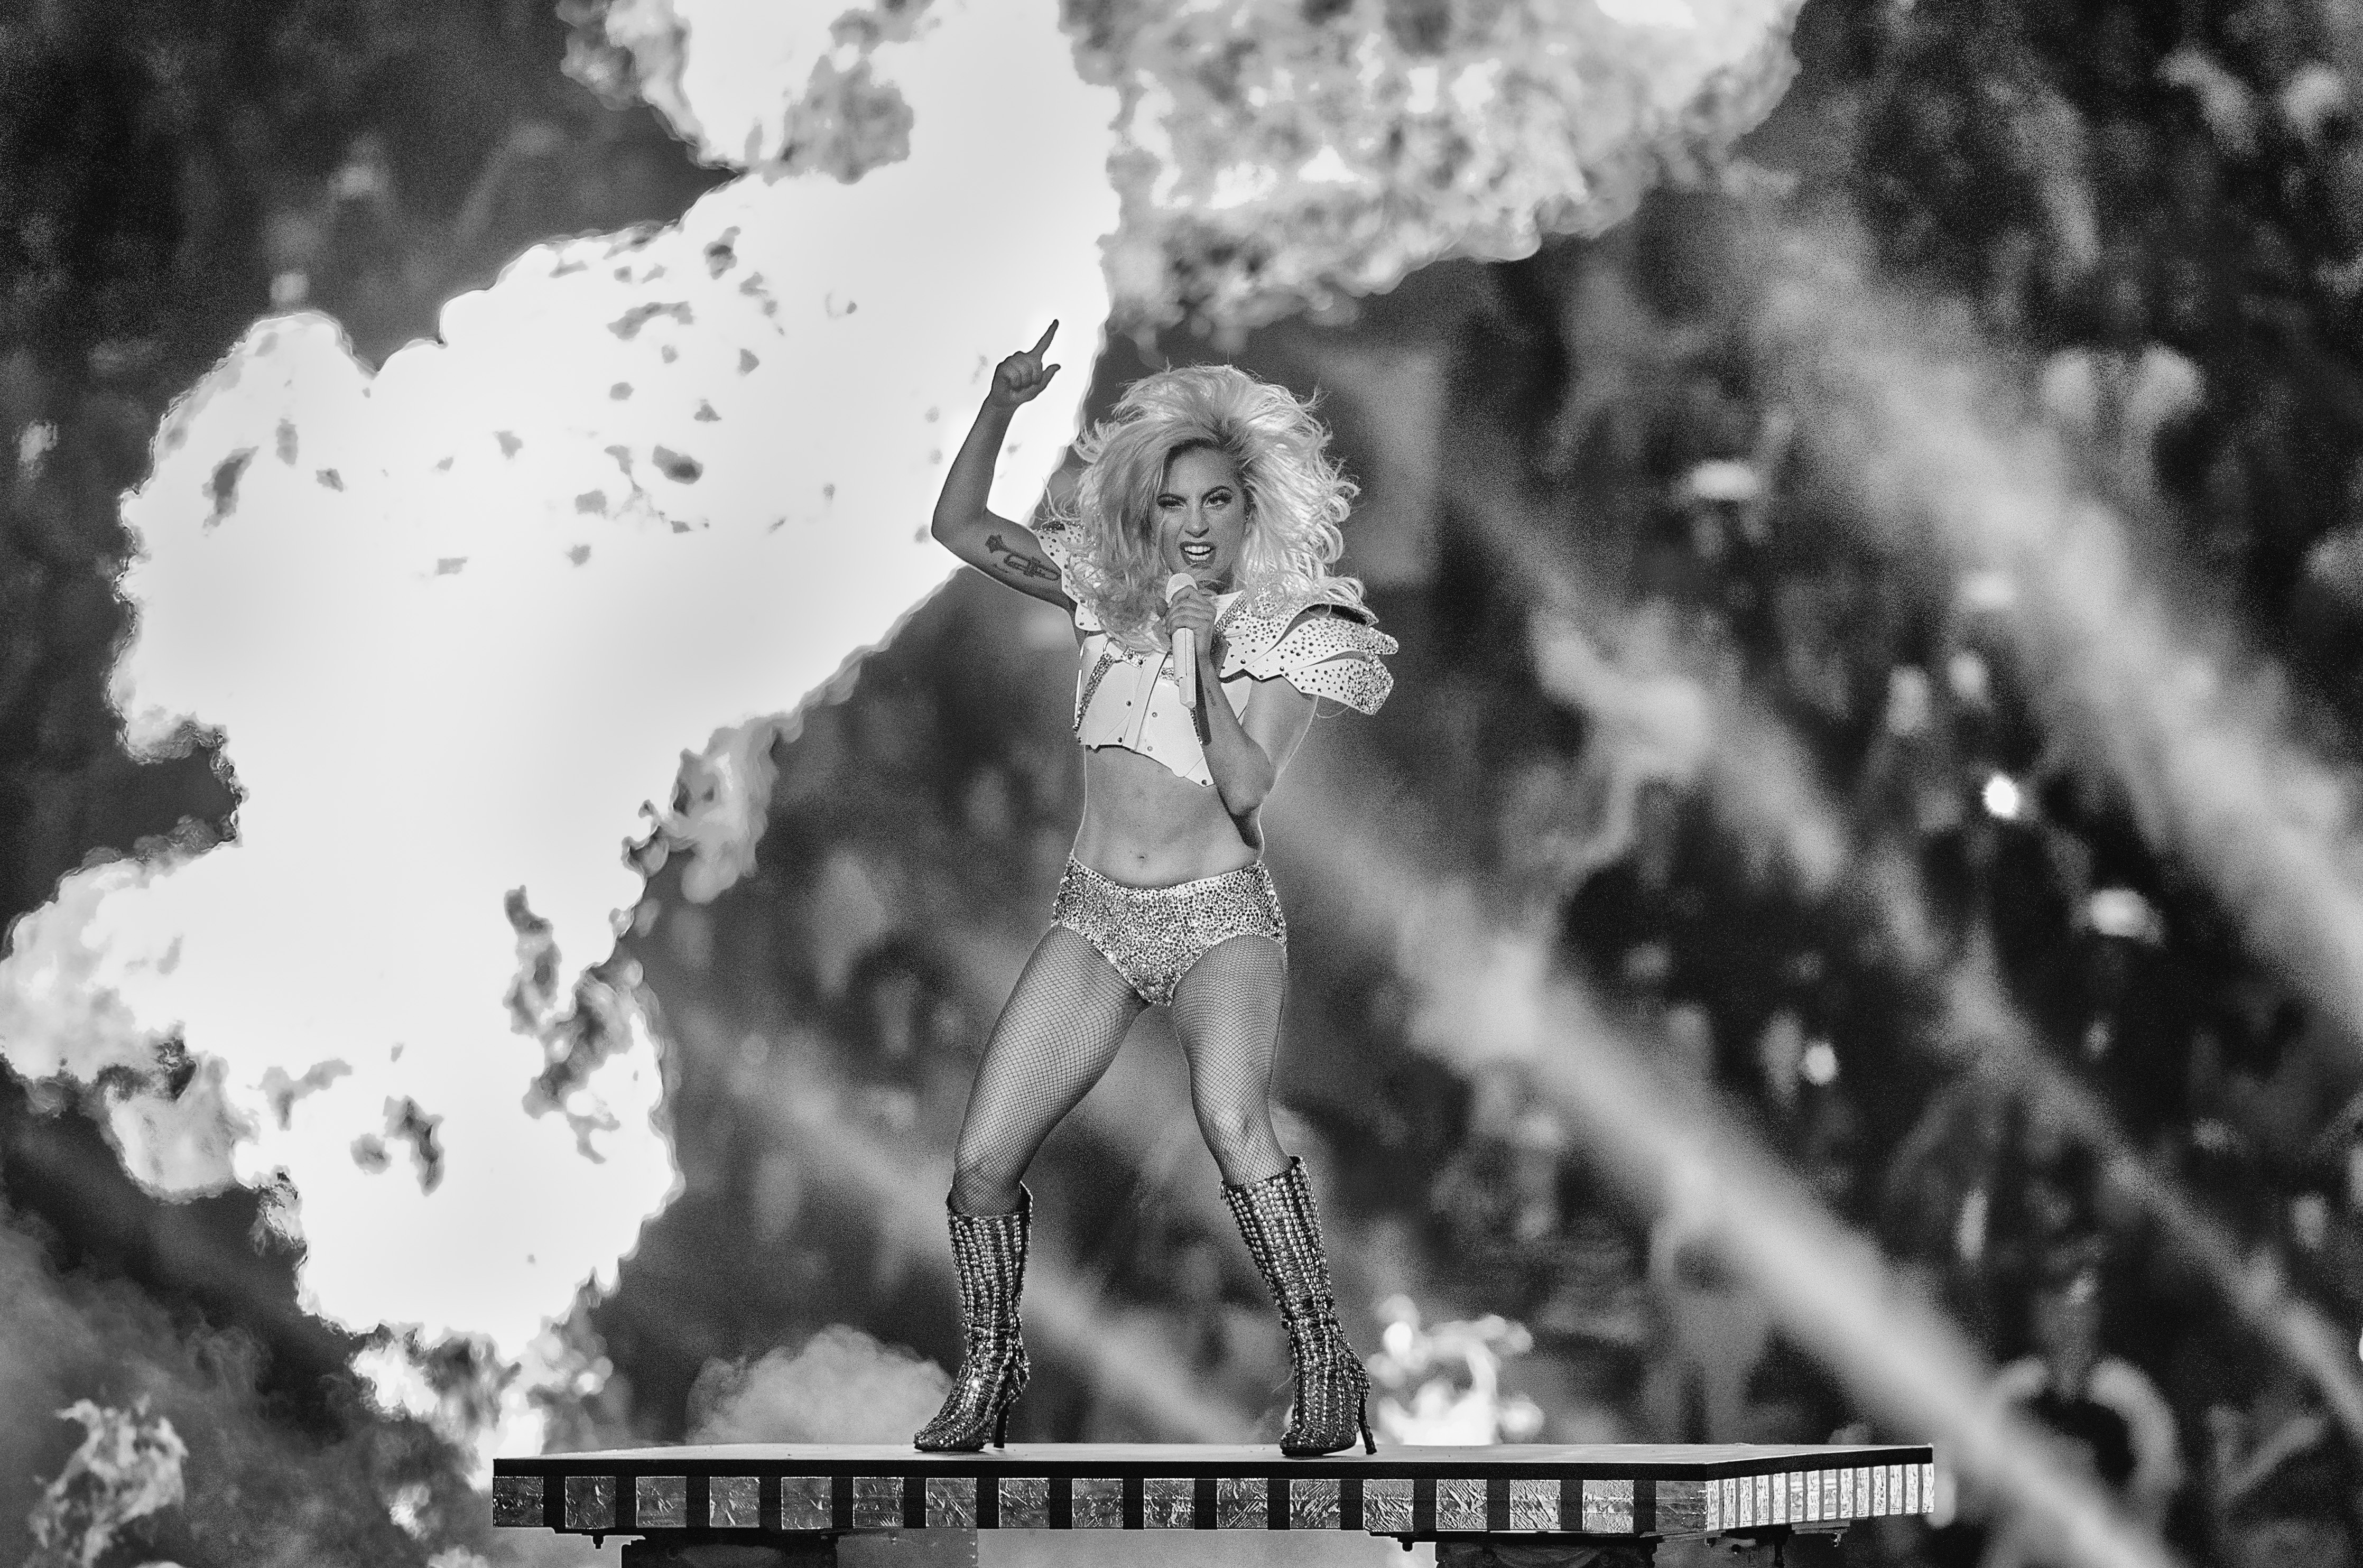 Поп дивата Лейди Гага направи зрелищно представление на полувремето на Супербоул вчера в Хюстън. Звездата изпрати и послание за толерантност по време на традиционния спектакъл по средата на дългоочаквания финал на американската Национална футболна лига.